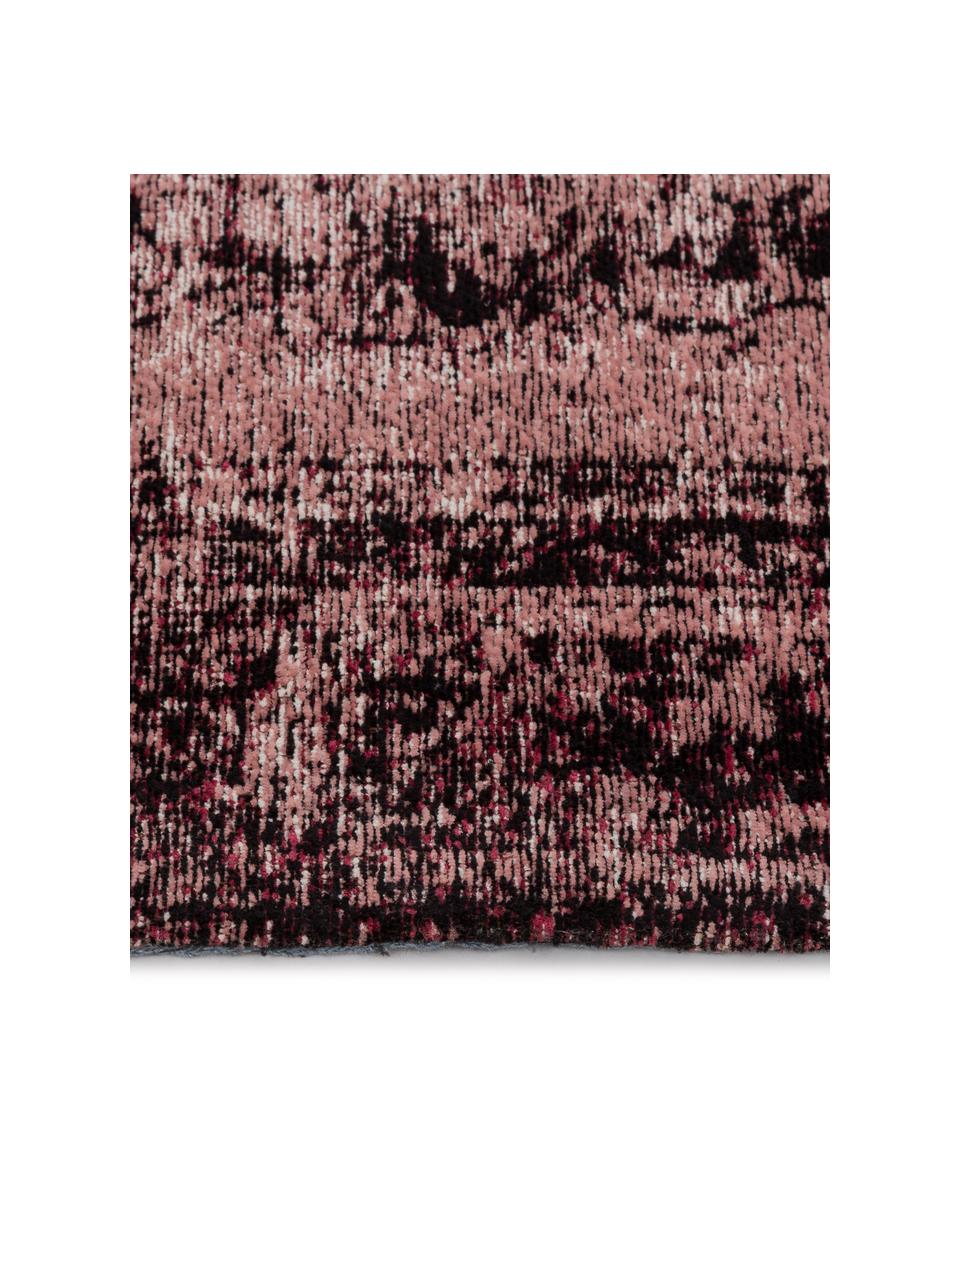 Ručne tkaný ženilkový koberec vo vintage štýle Milan, bledoružová, Bordová, čierna, krémová